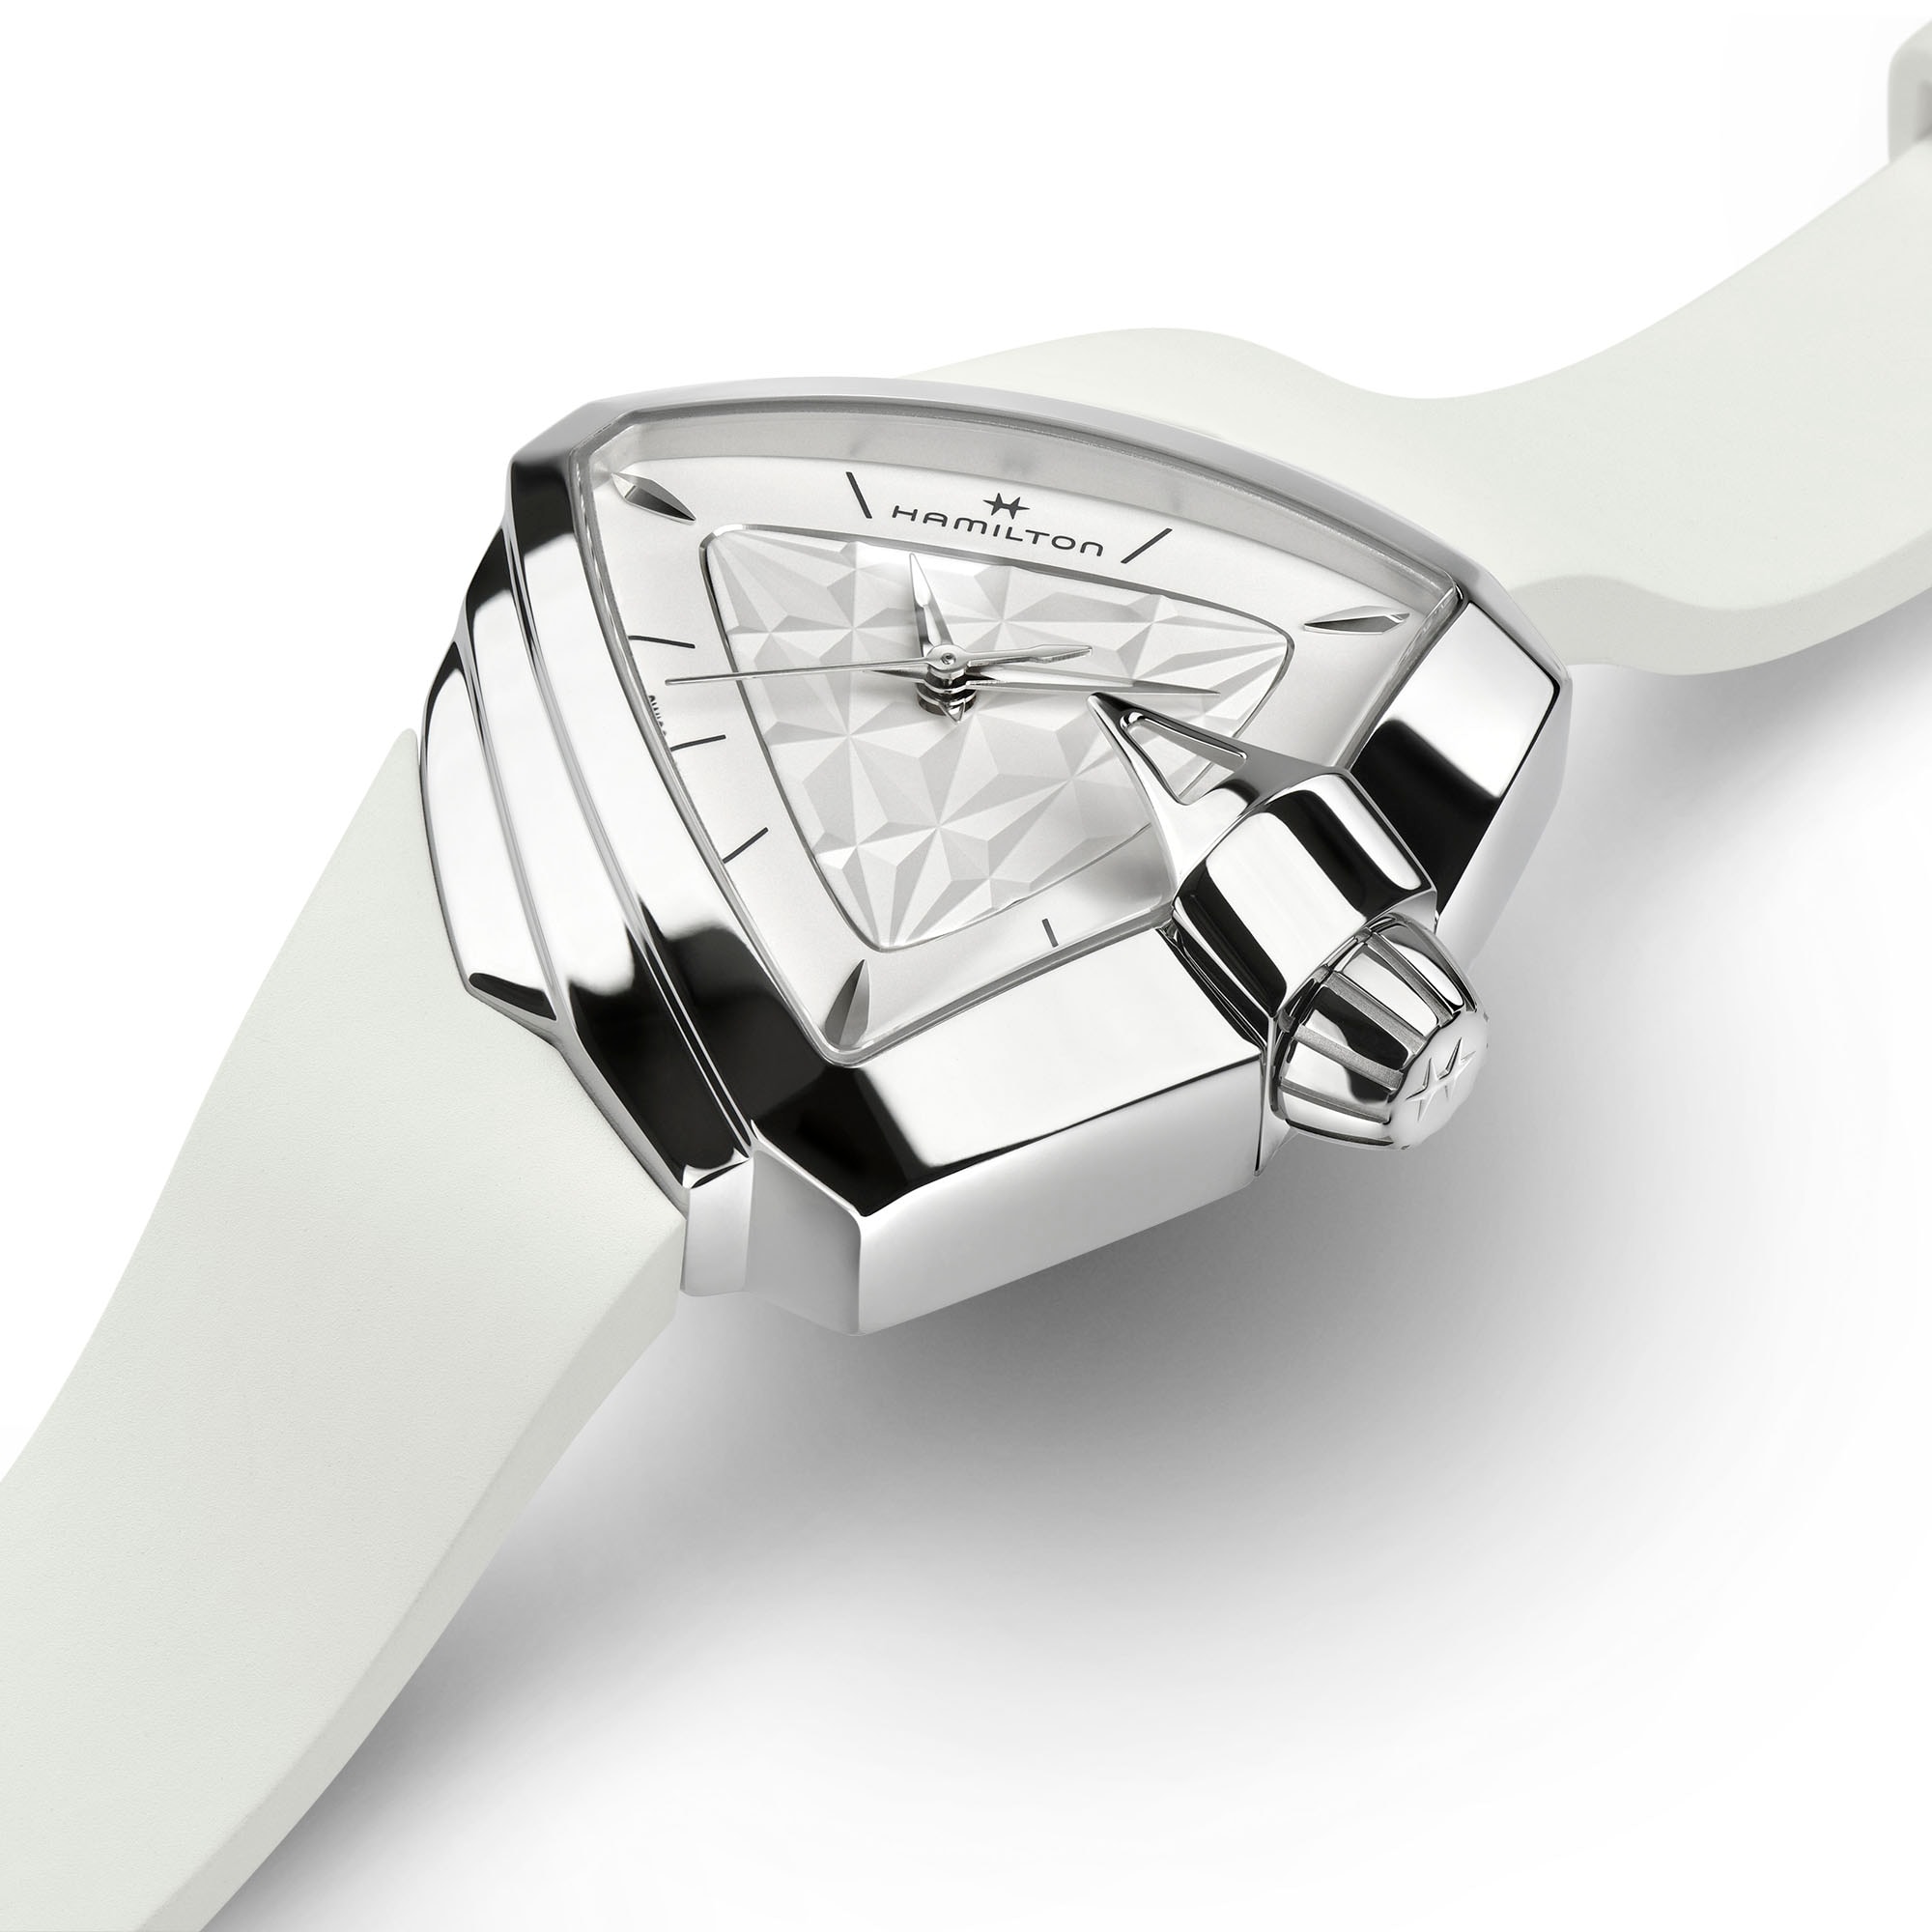 ベンチュラ S Quartz - ダイヤルカラー:ホワイト - H24251310 | Hamilton Watch